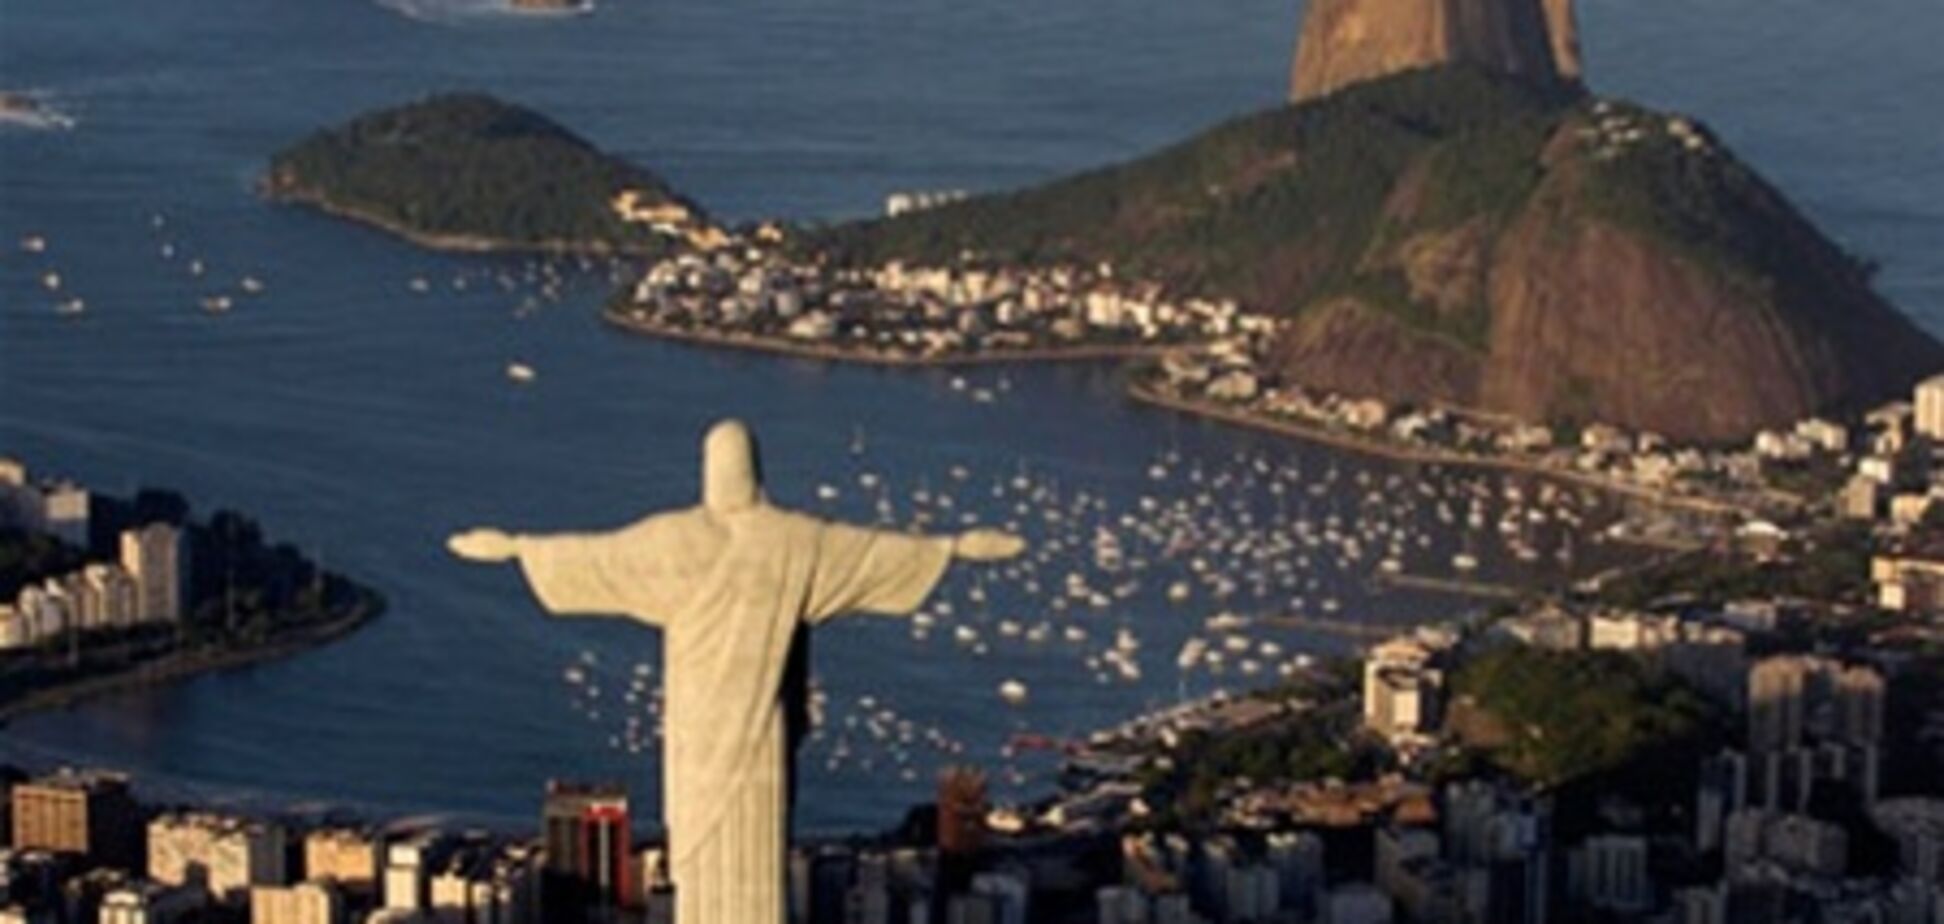 Бразилия будет контролировать цены отелей во время проведения Кубка FIFA